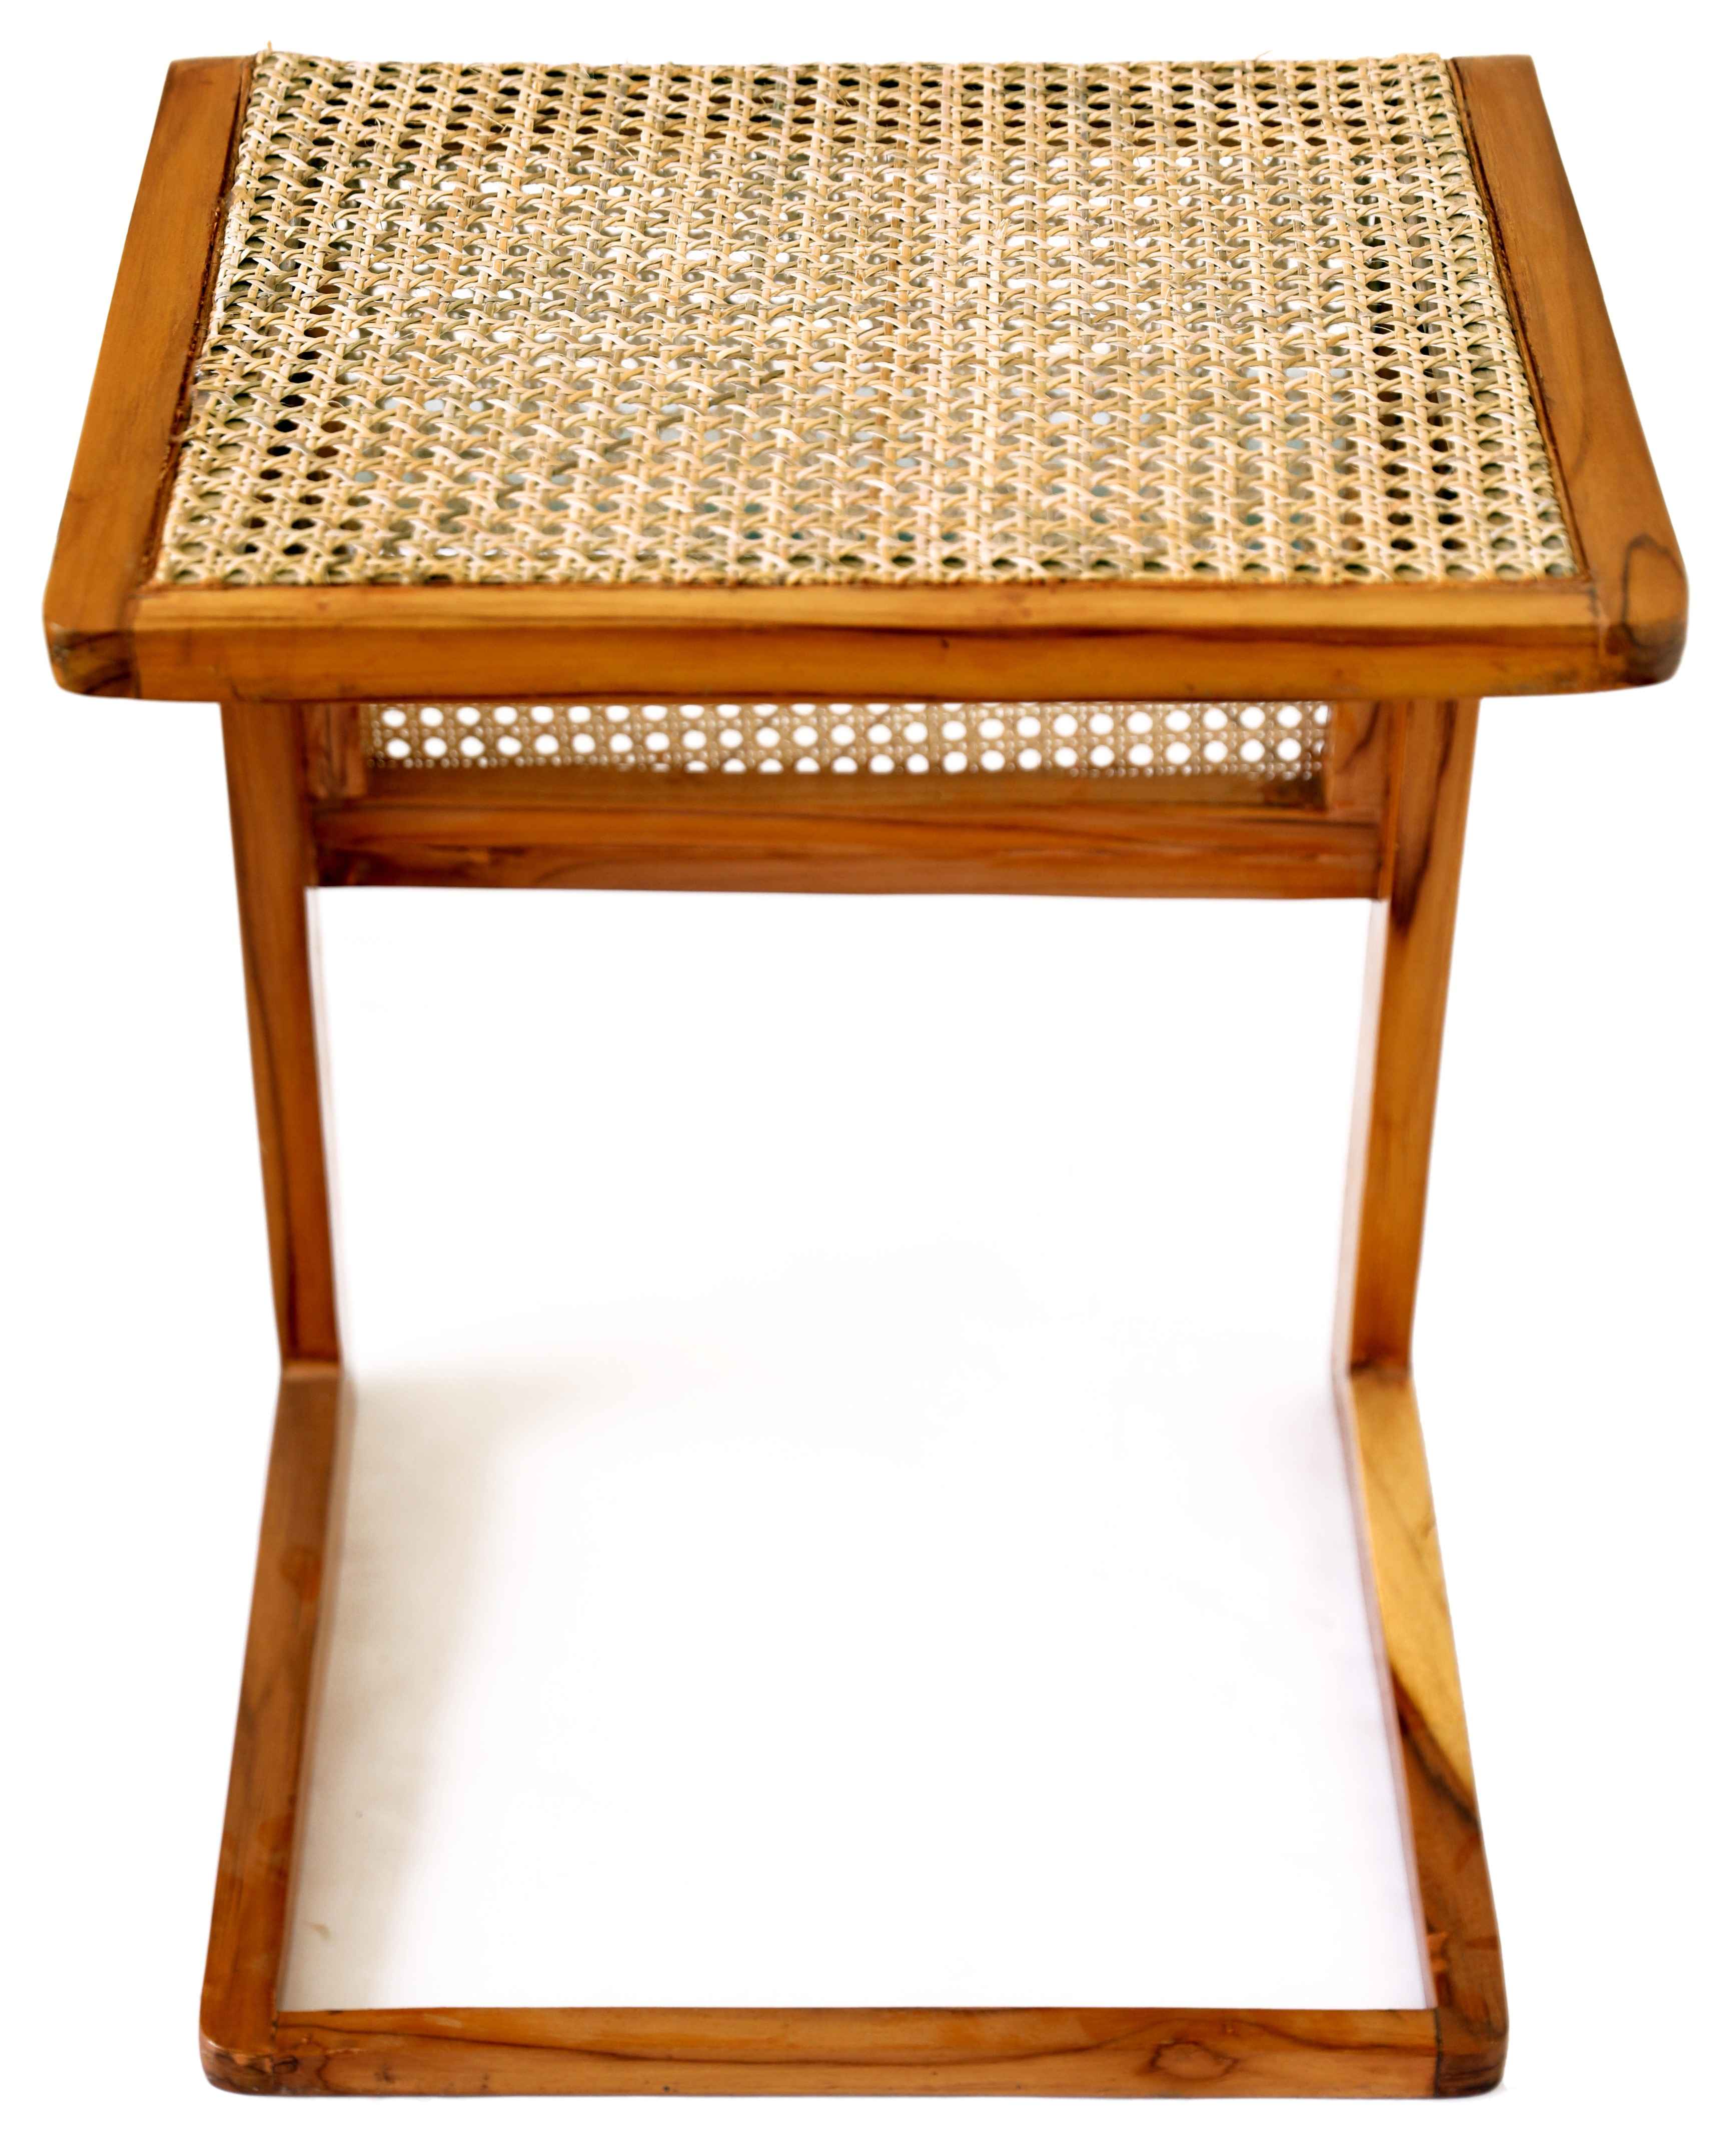 Ottomon rattan stool